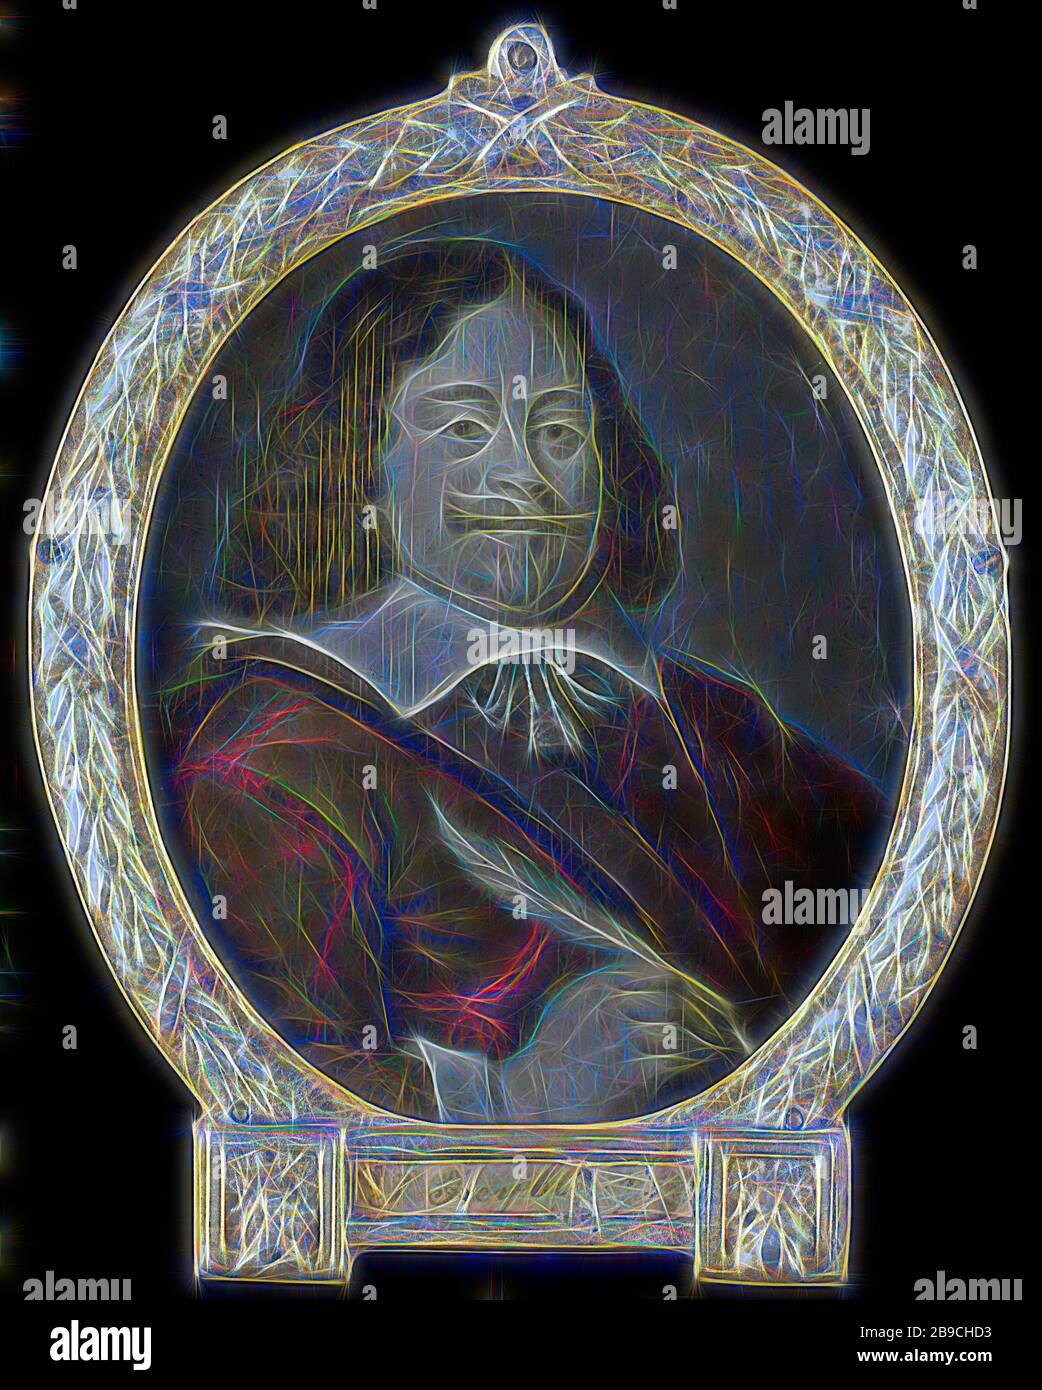 Ritratto di Joannes si raffredda (nato nel 1611), giurista, storico e poeta latino a Hoorn, Ritratto di Joannes si raffredda (nato nel 1611). Avvocato, storico e poeta latino a Hoorn. Busto ovale, a destra, penna a destra. Parte di una raccolta di ritratti di poeti olandesi, ritratto di uno scrittore, scrittore, poeta, autore, Joannes raffredda, Arnoud van Halen, 1700 - 1732, pittura ad olio (vernice), h 11 cm × w 9,5 cm h 41,2 cm × w 47,4 cm × d 1,6 cm, reimmaginata da Gibon, design di calore allegro di luminosità e raggi di luce radianza. Arte classica reinventata con un tocco moderno. Fotografia ispirata al futurismo, emb Foto Stock